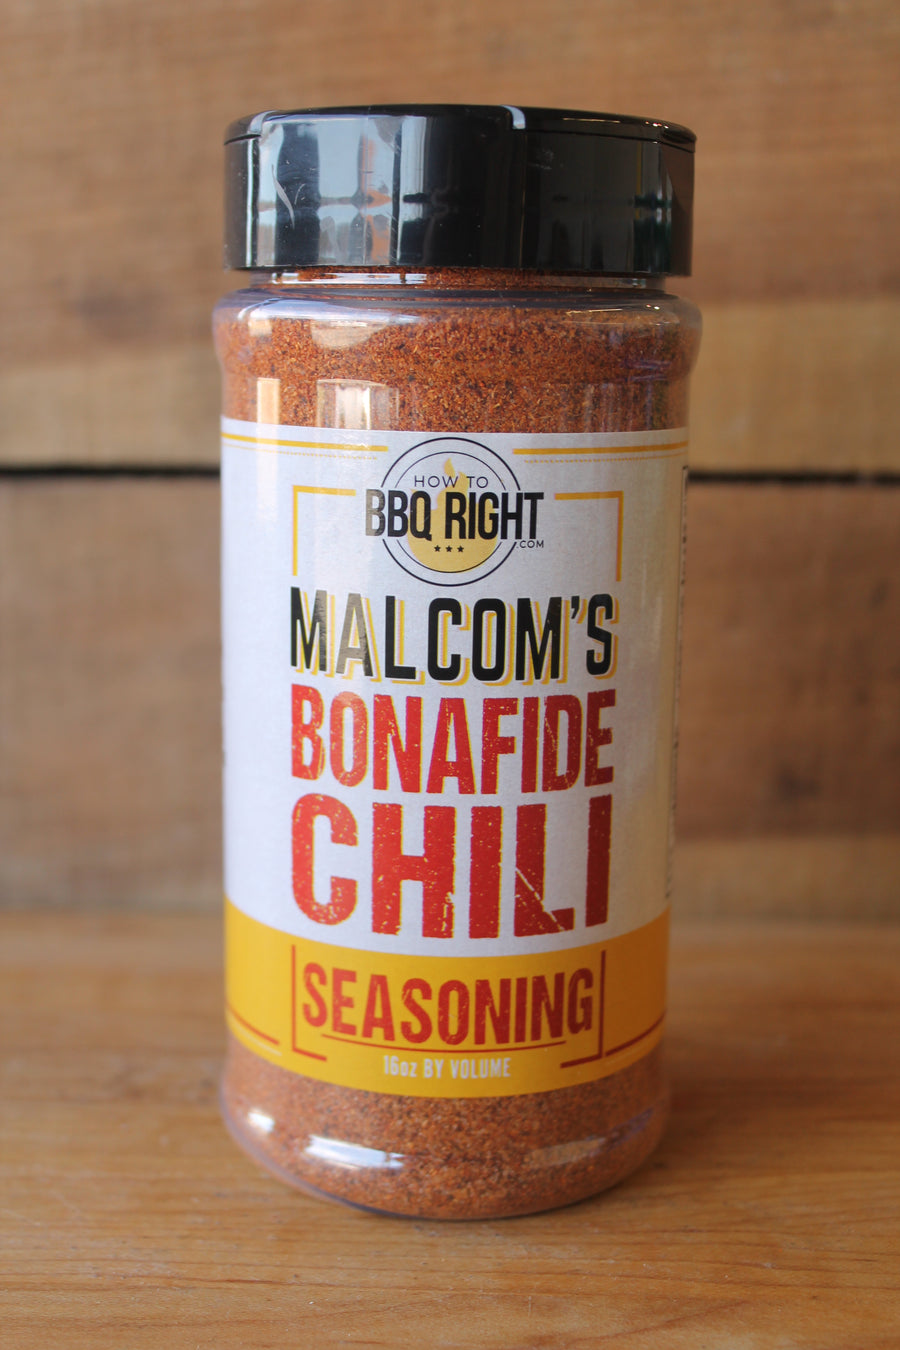 Malcom's "Bonafide" Chili Seasoning